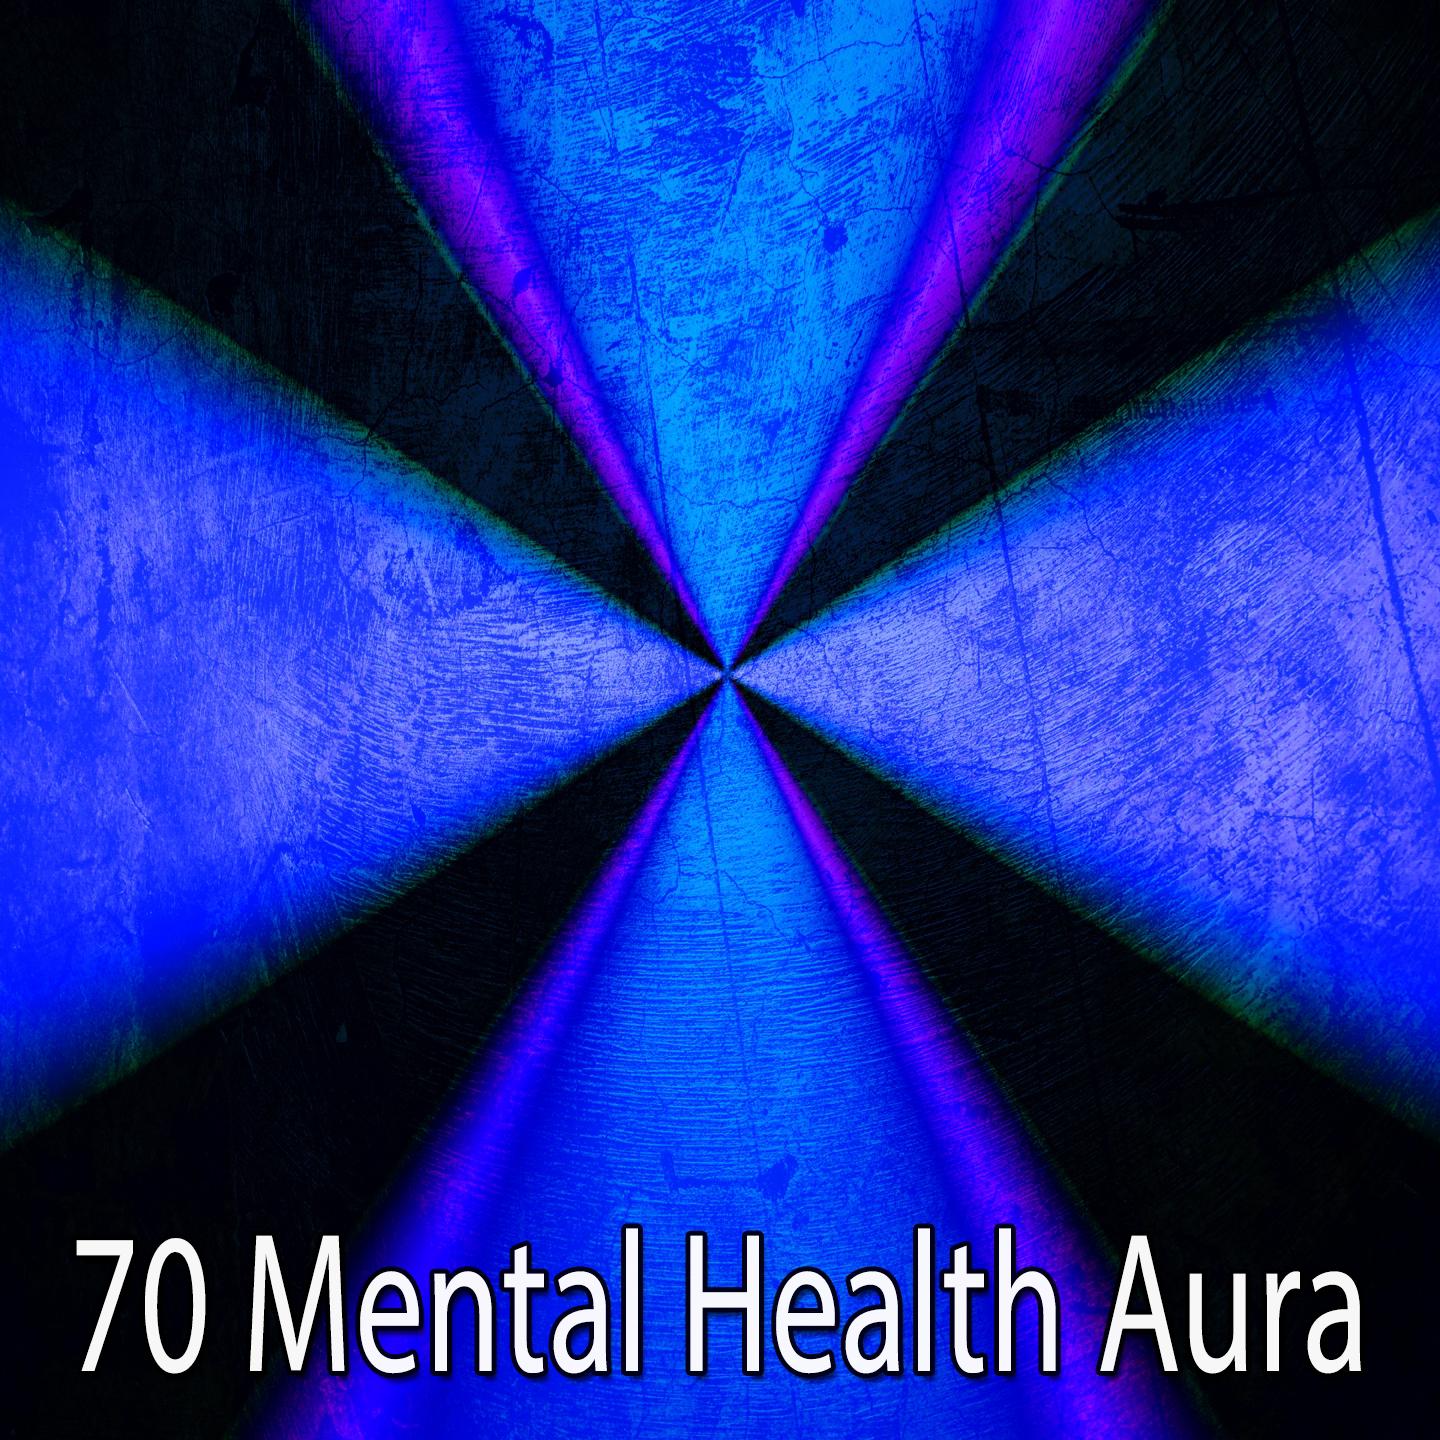 70 Mental Health Aura